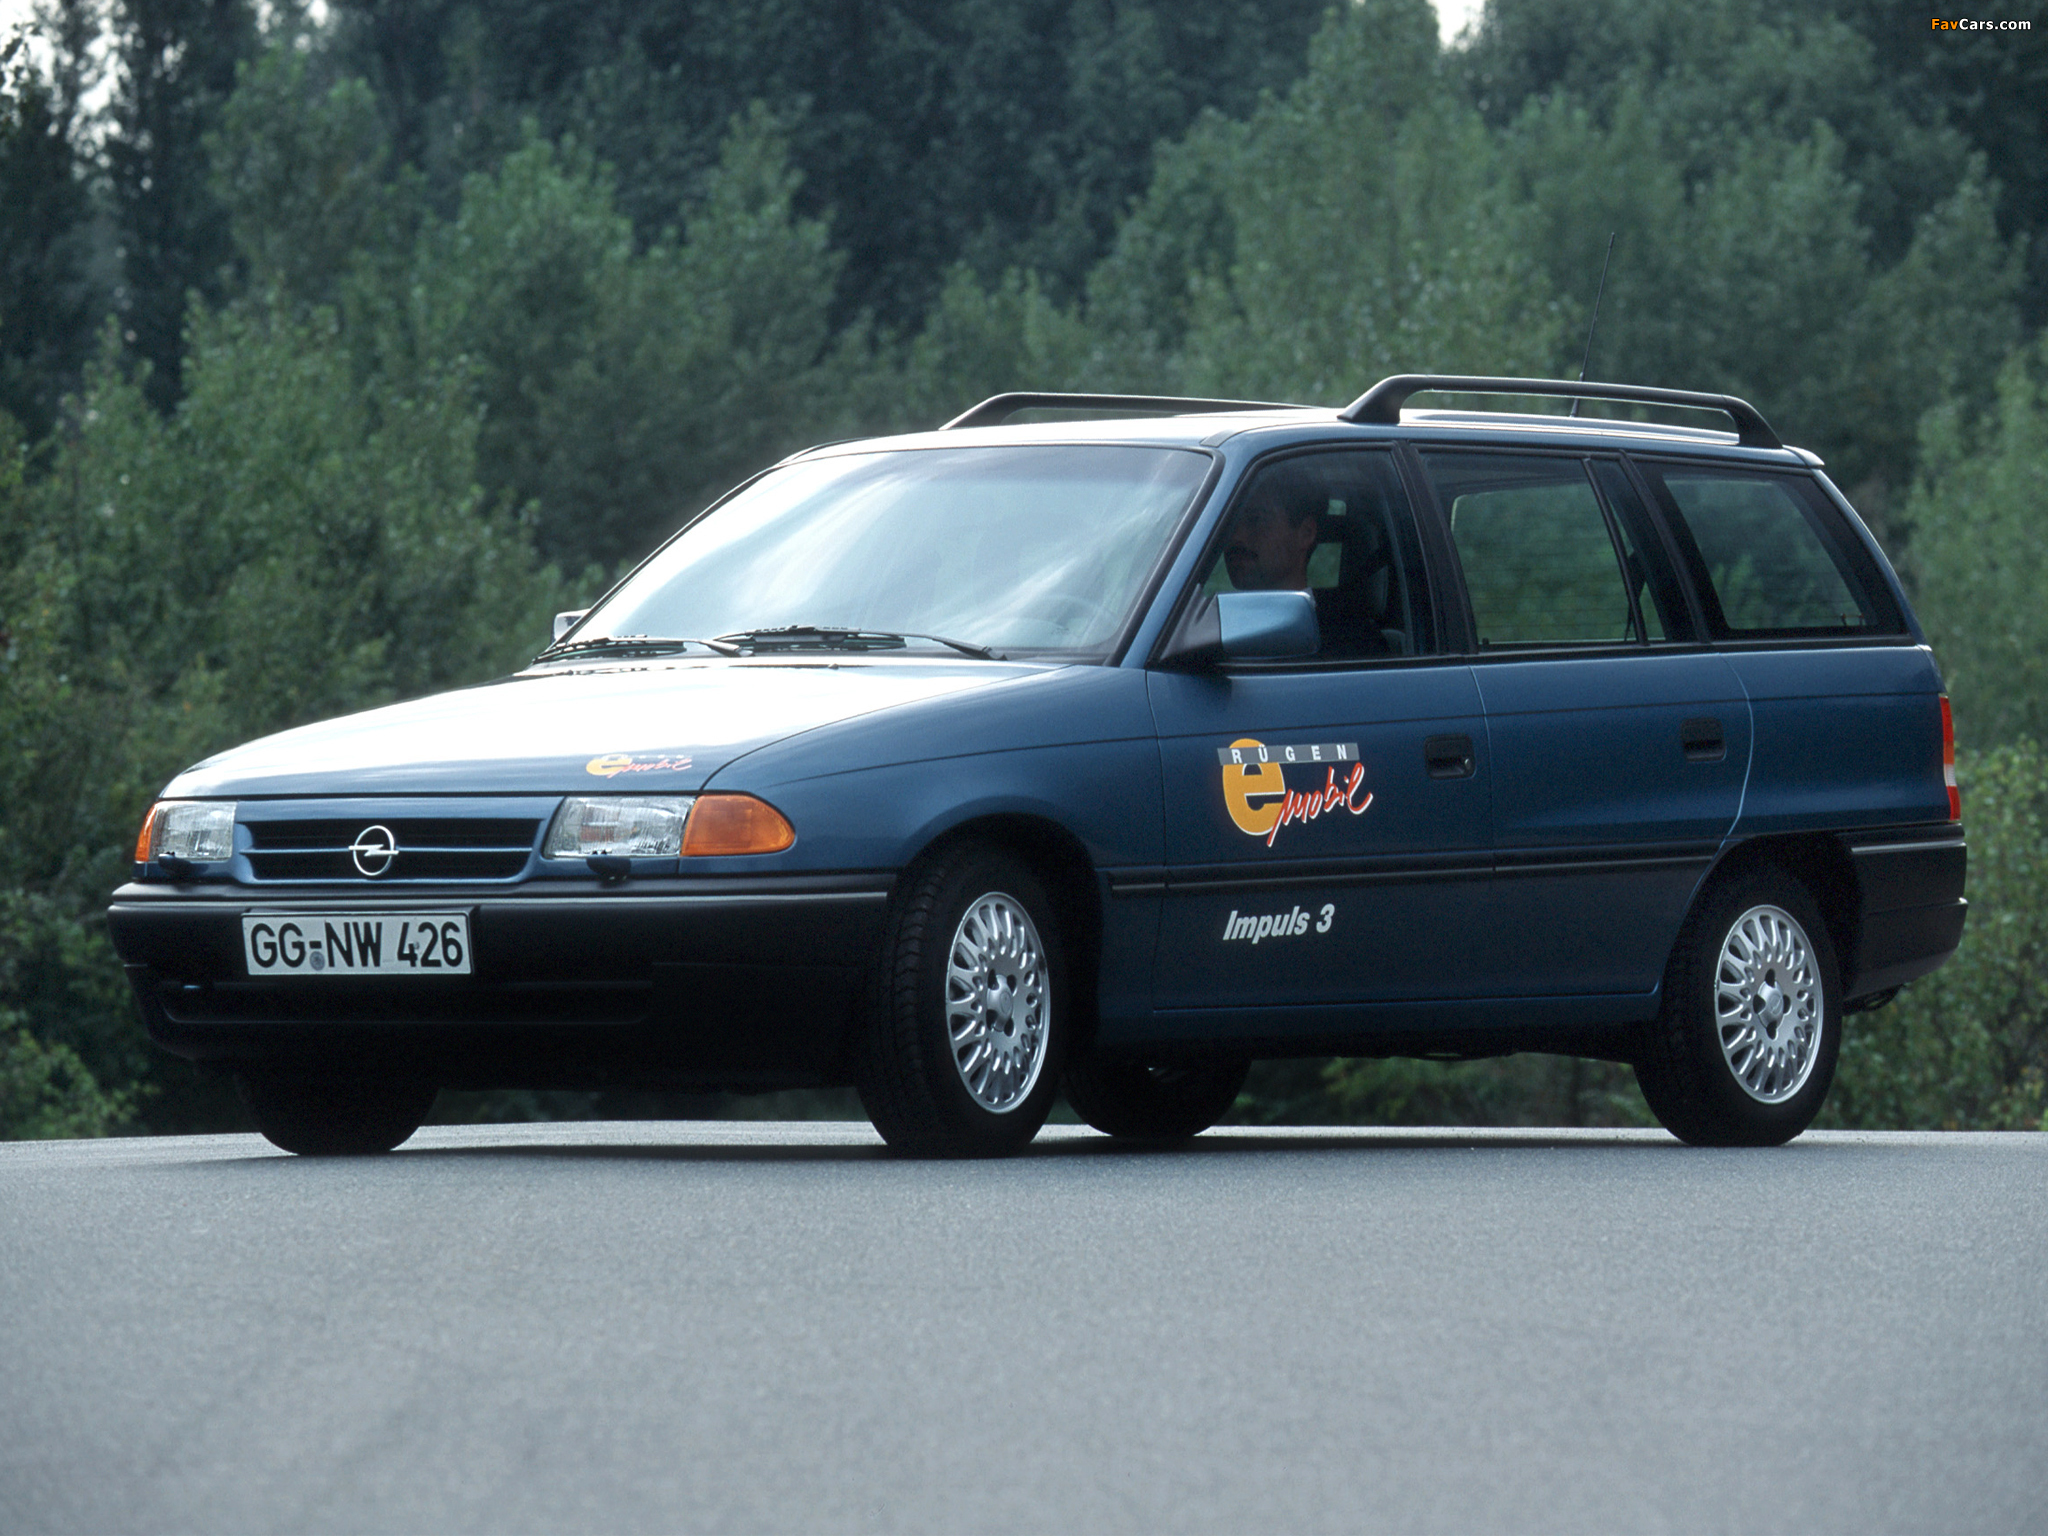 Opel Astra Impuls 3 (F) 1993 photos (2048 x 1536)